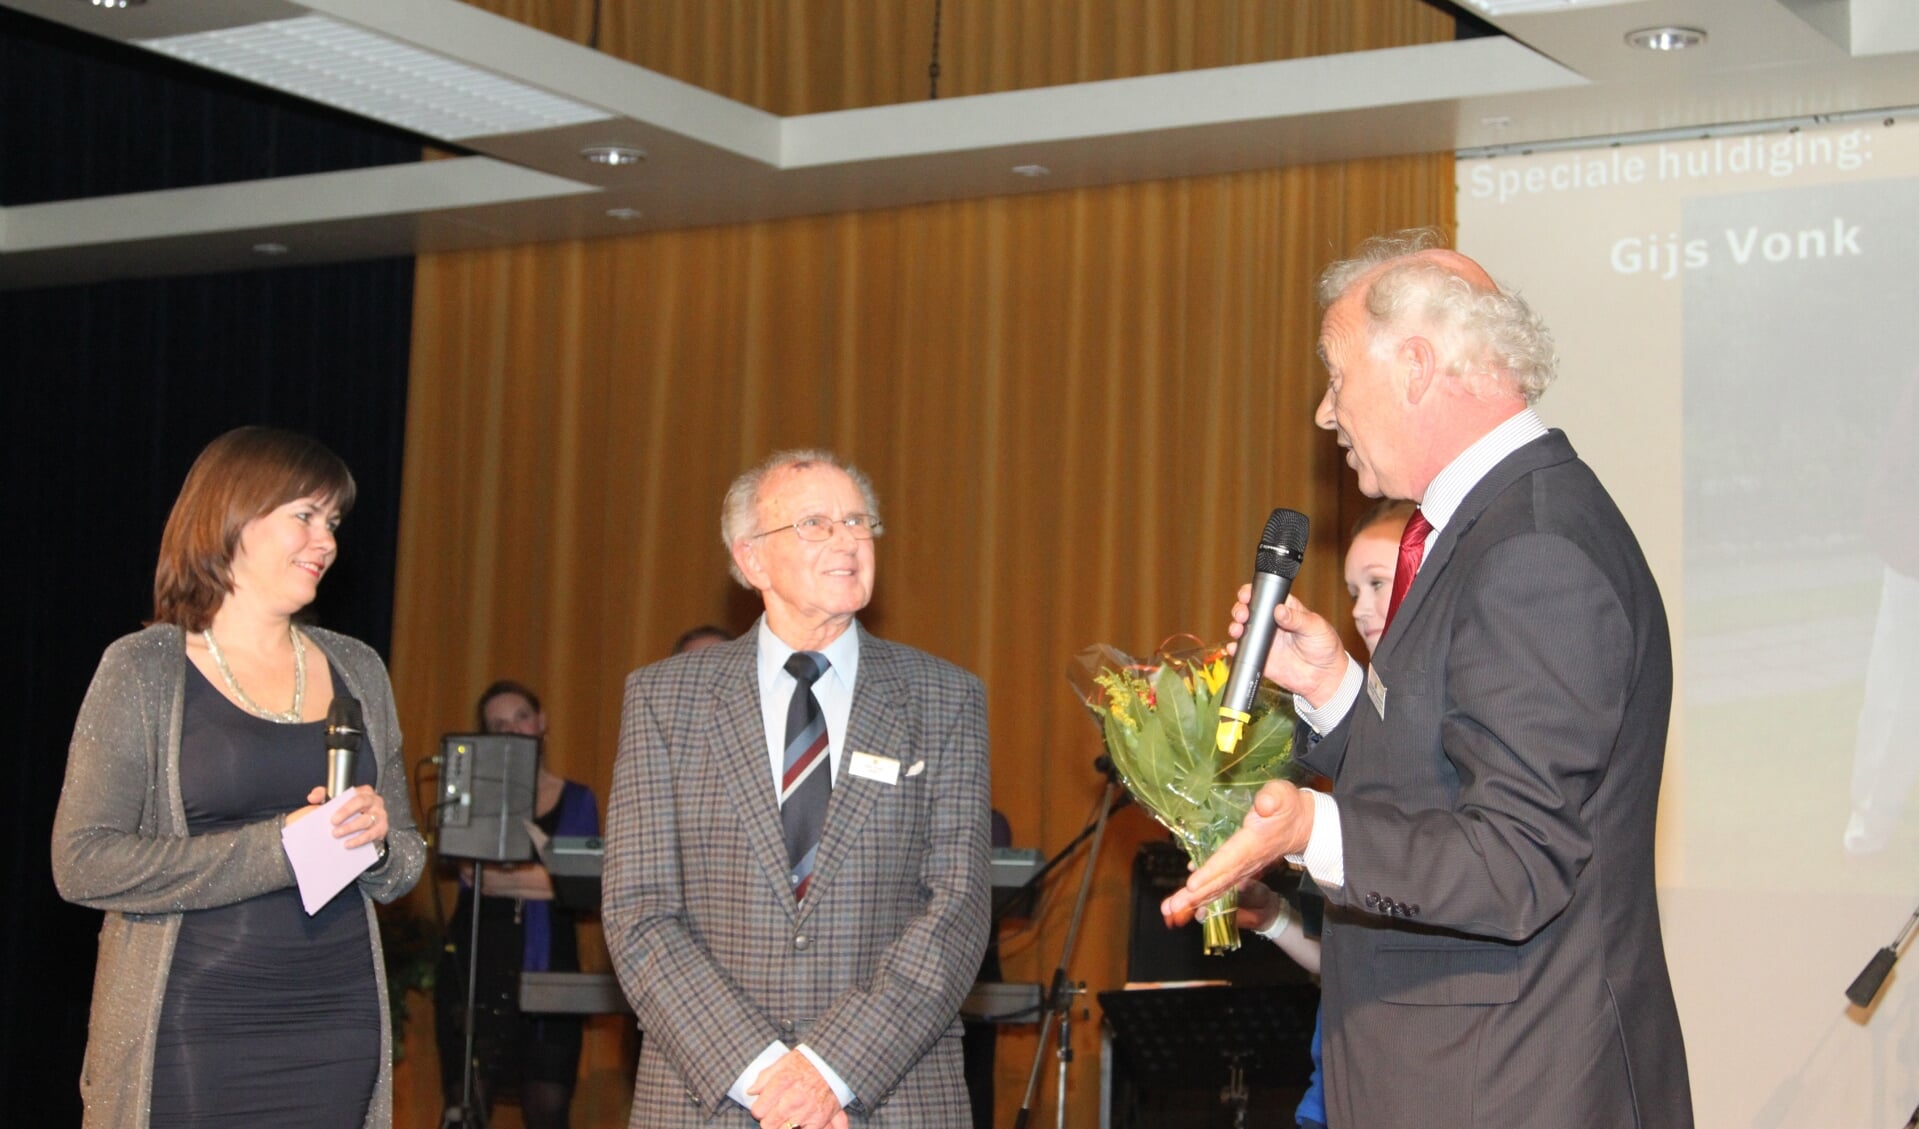 Op het Sportgala 2011 werd aan de (toen) 88-jarige Gijs Vonk, de ‘speciale gast’ prijs uitgereikt. Naast de lovende woorden voor de man die toen al ruim 16 jaar deze Bowls Club overeind houdt, ontving Vonk een prachtige trofee. 